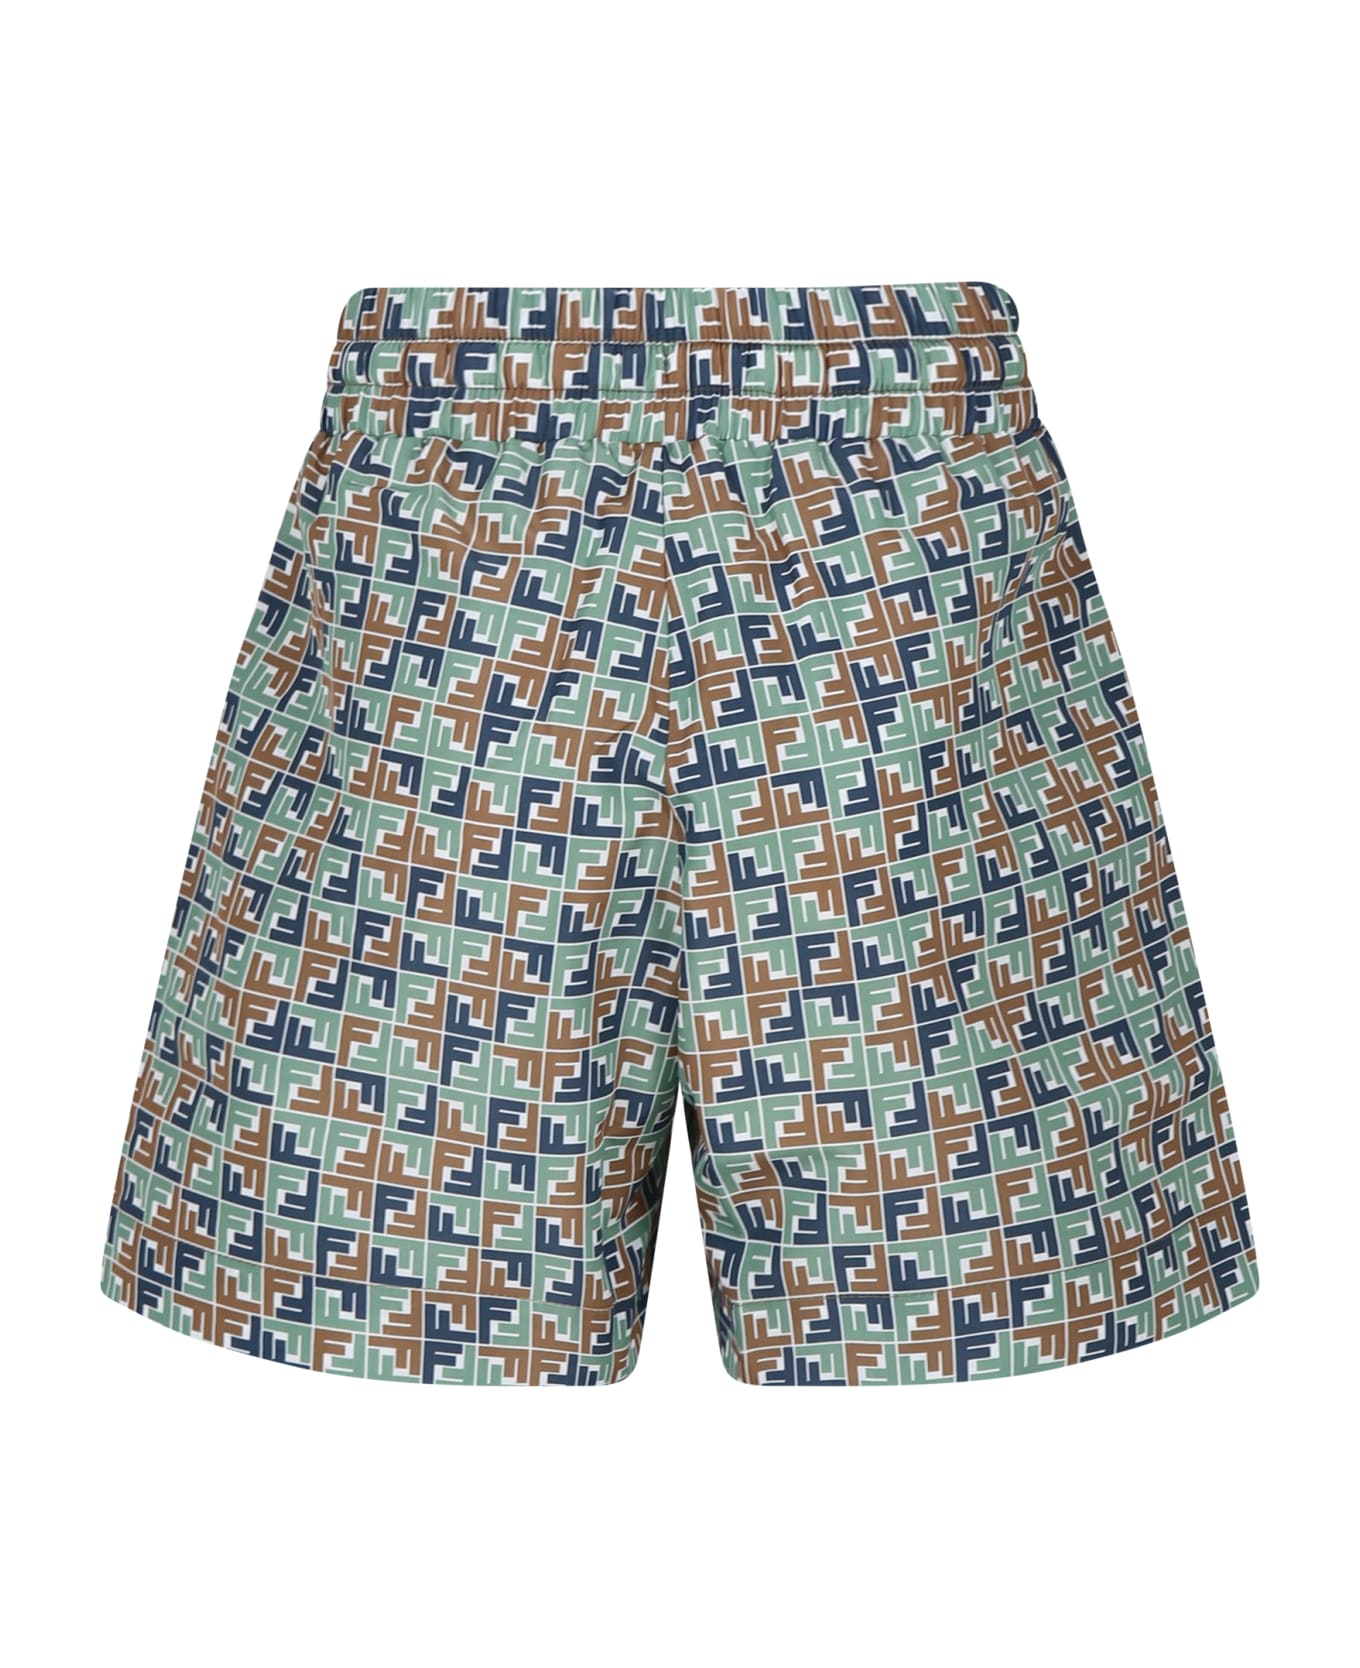 Fendi Multicolor Swim Shorts For Boy With Iconic Ff - Multicolor 水着